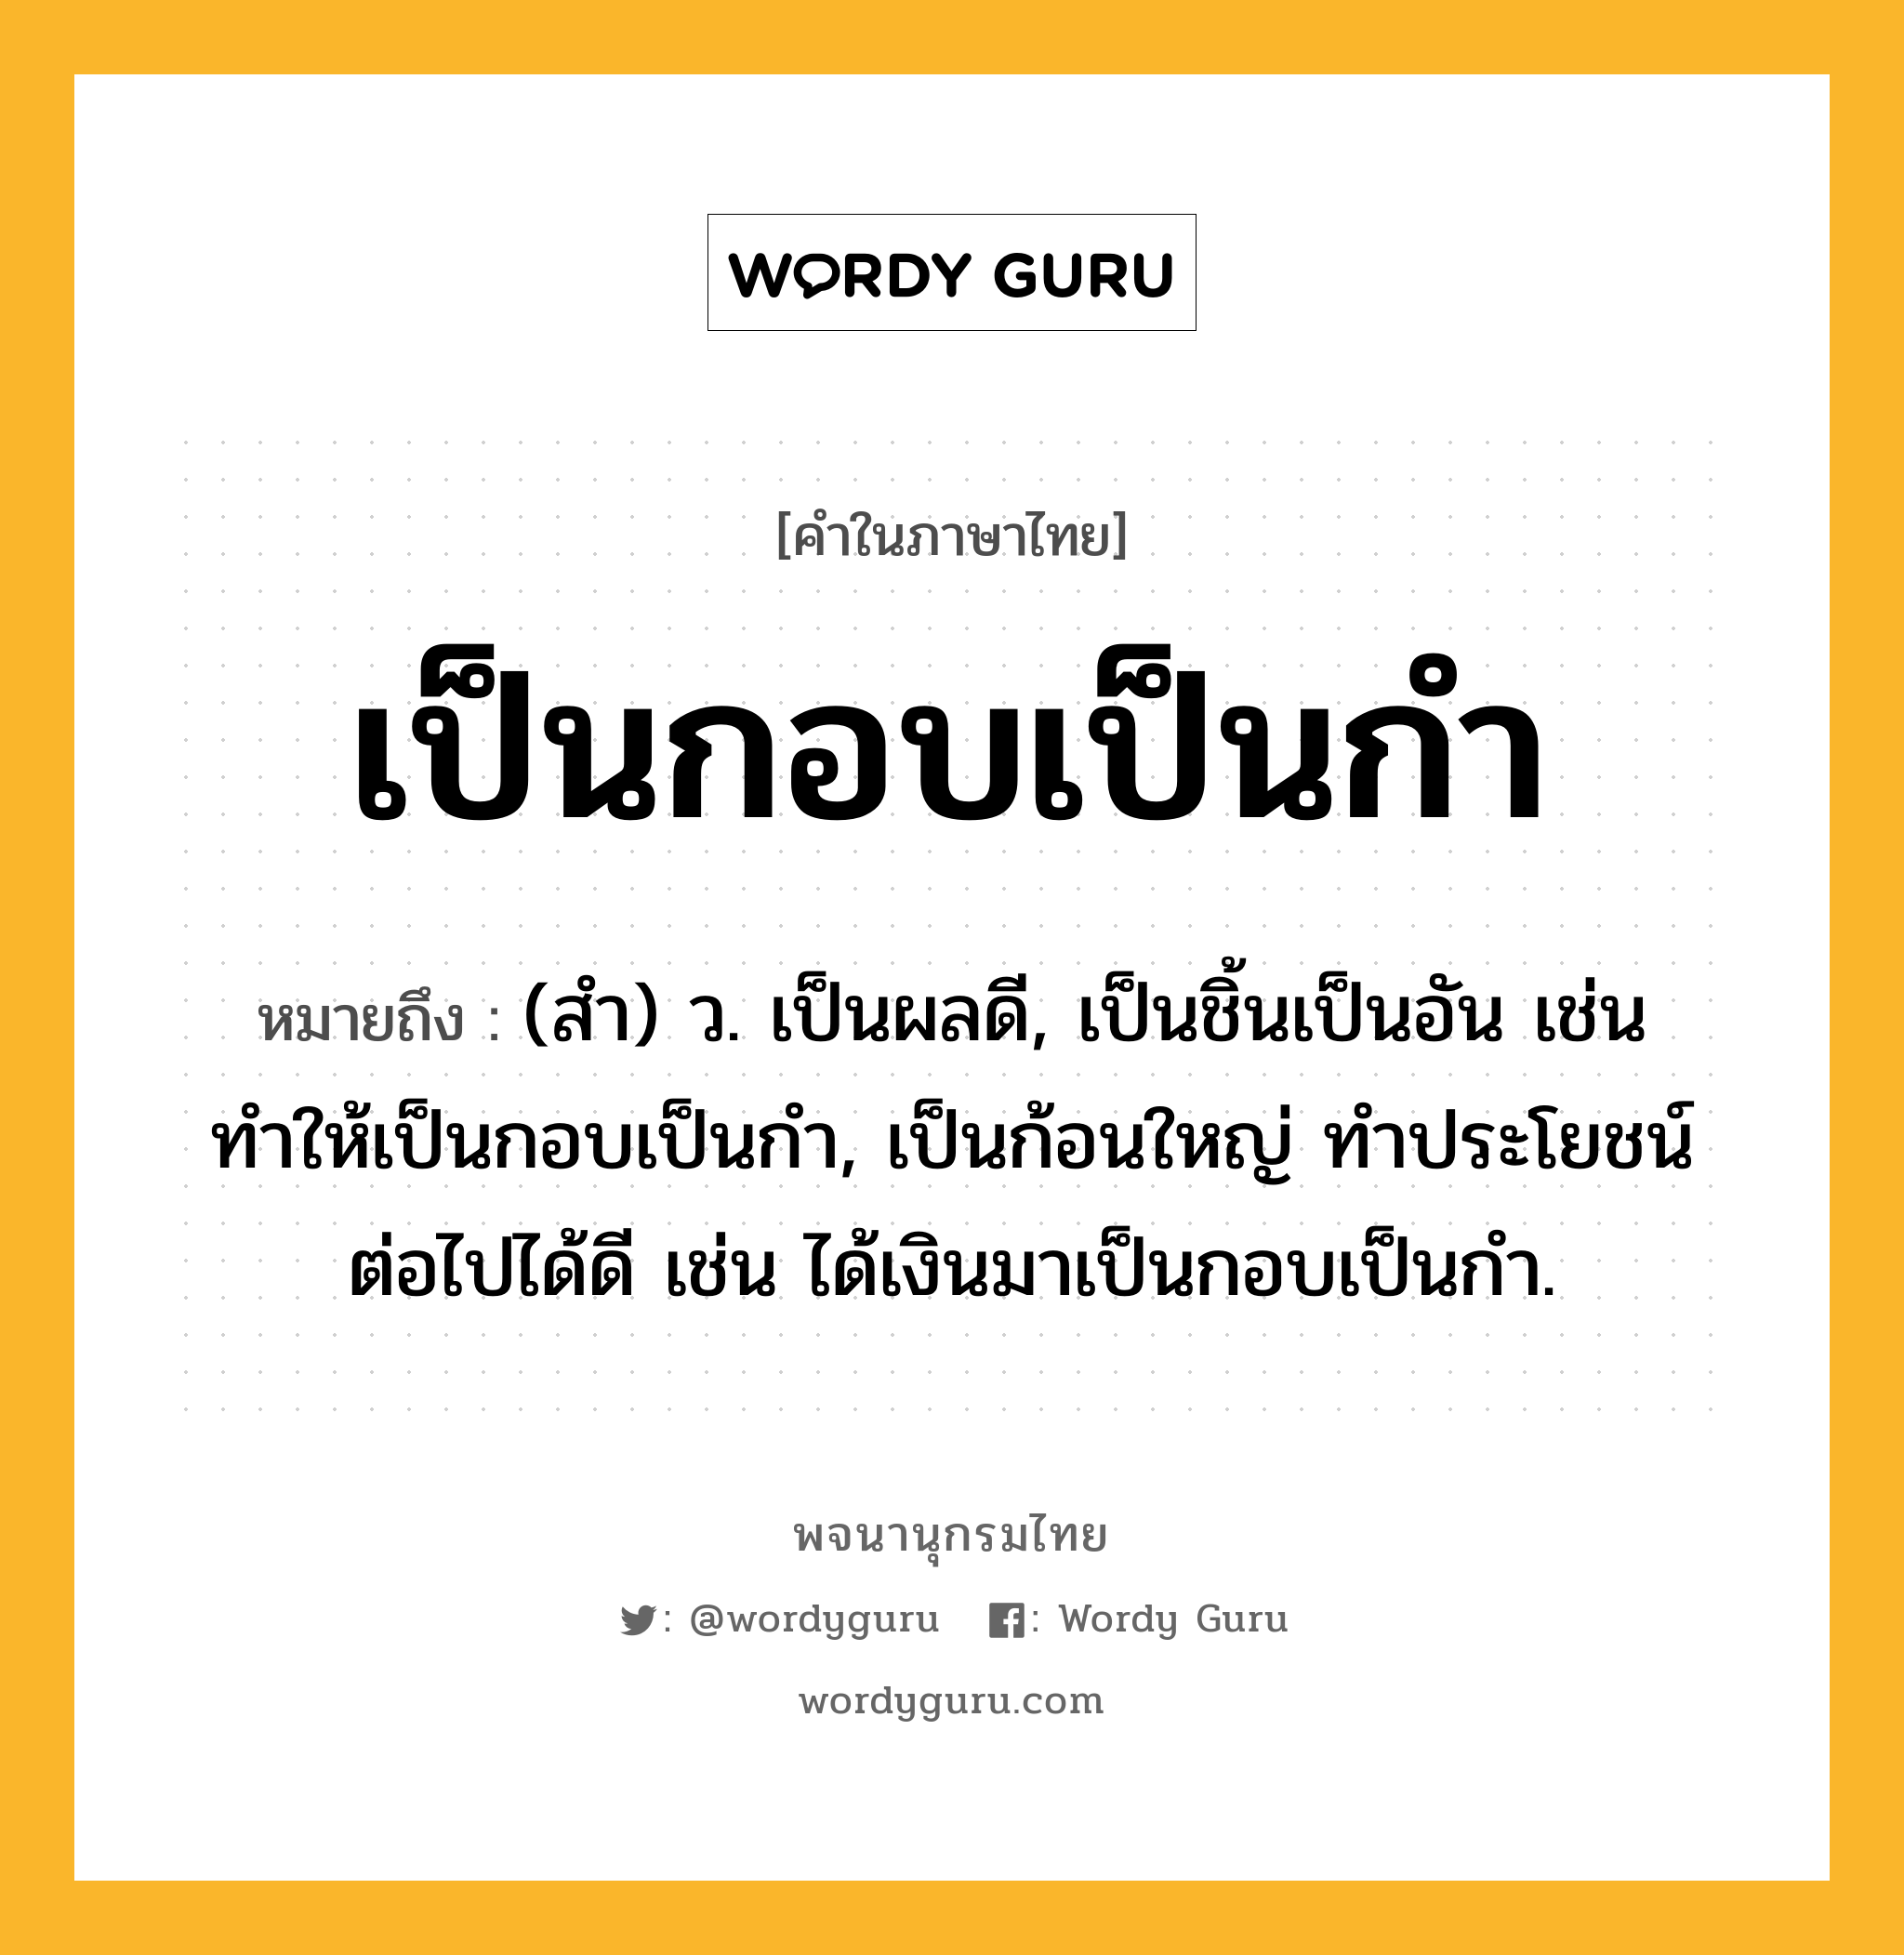 เป็นกอบเป็นกำ ความหมาย หมายถึงอะไร?, คำในภาษาไทย เป็นกอบเป็นกำ หมายถึง (สํา) ว. เป็นผลดี, เป็นชิ้นเป็นอัน เช่น ทำให้เป็นกอบเป็นกำ, เป็นก้อนใหญ่ ทําประโยชน์ต่อไปได้ดี เช่น ได้เงินมาเป็นกอบเป็นกำ.